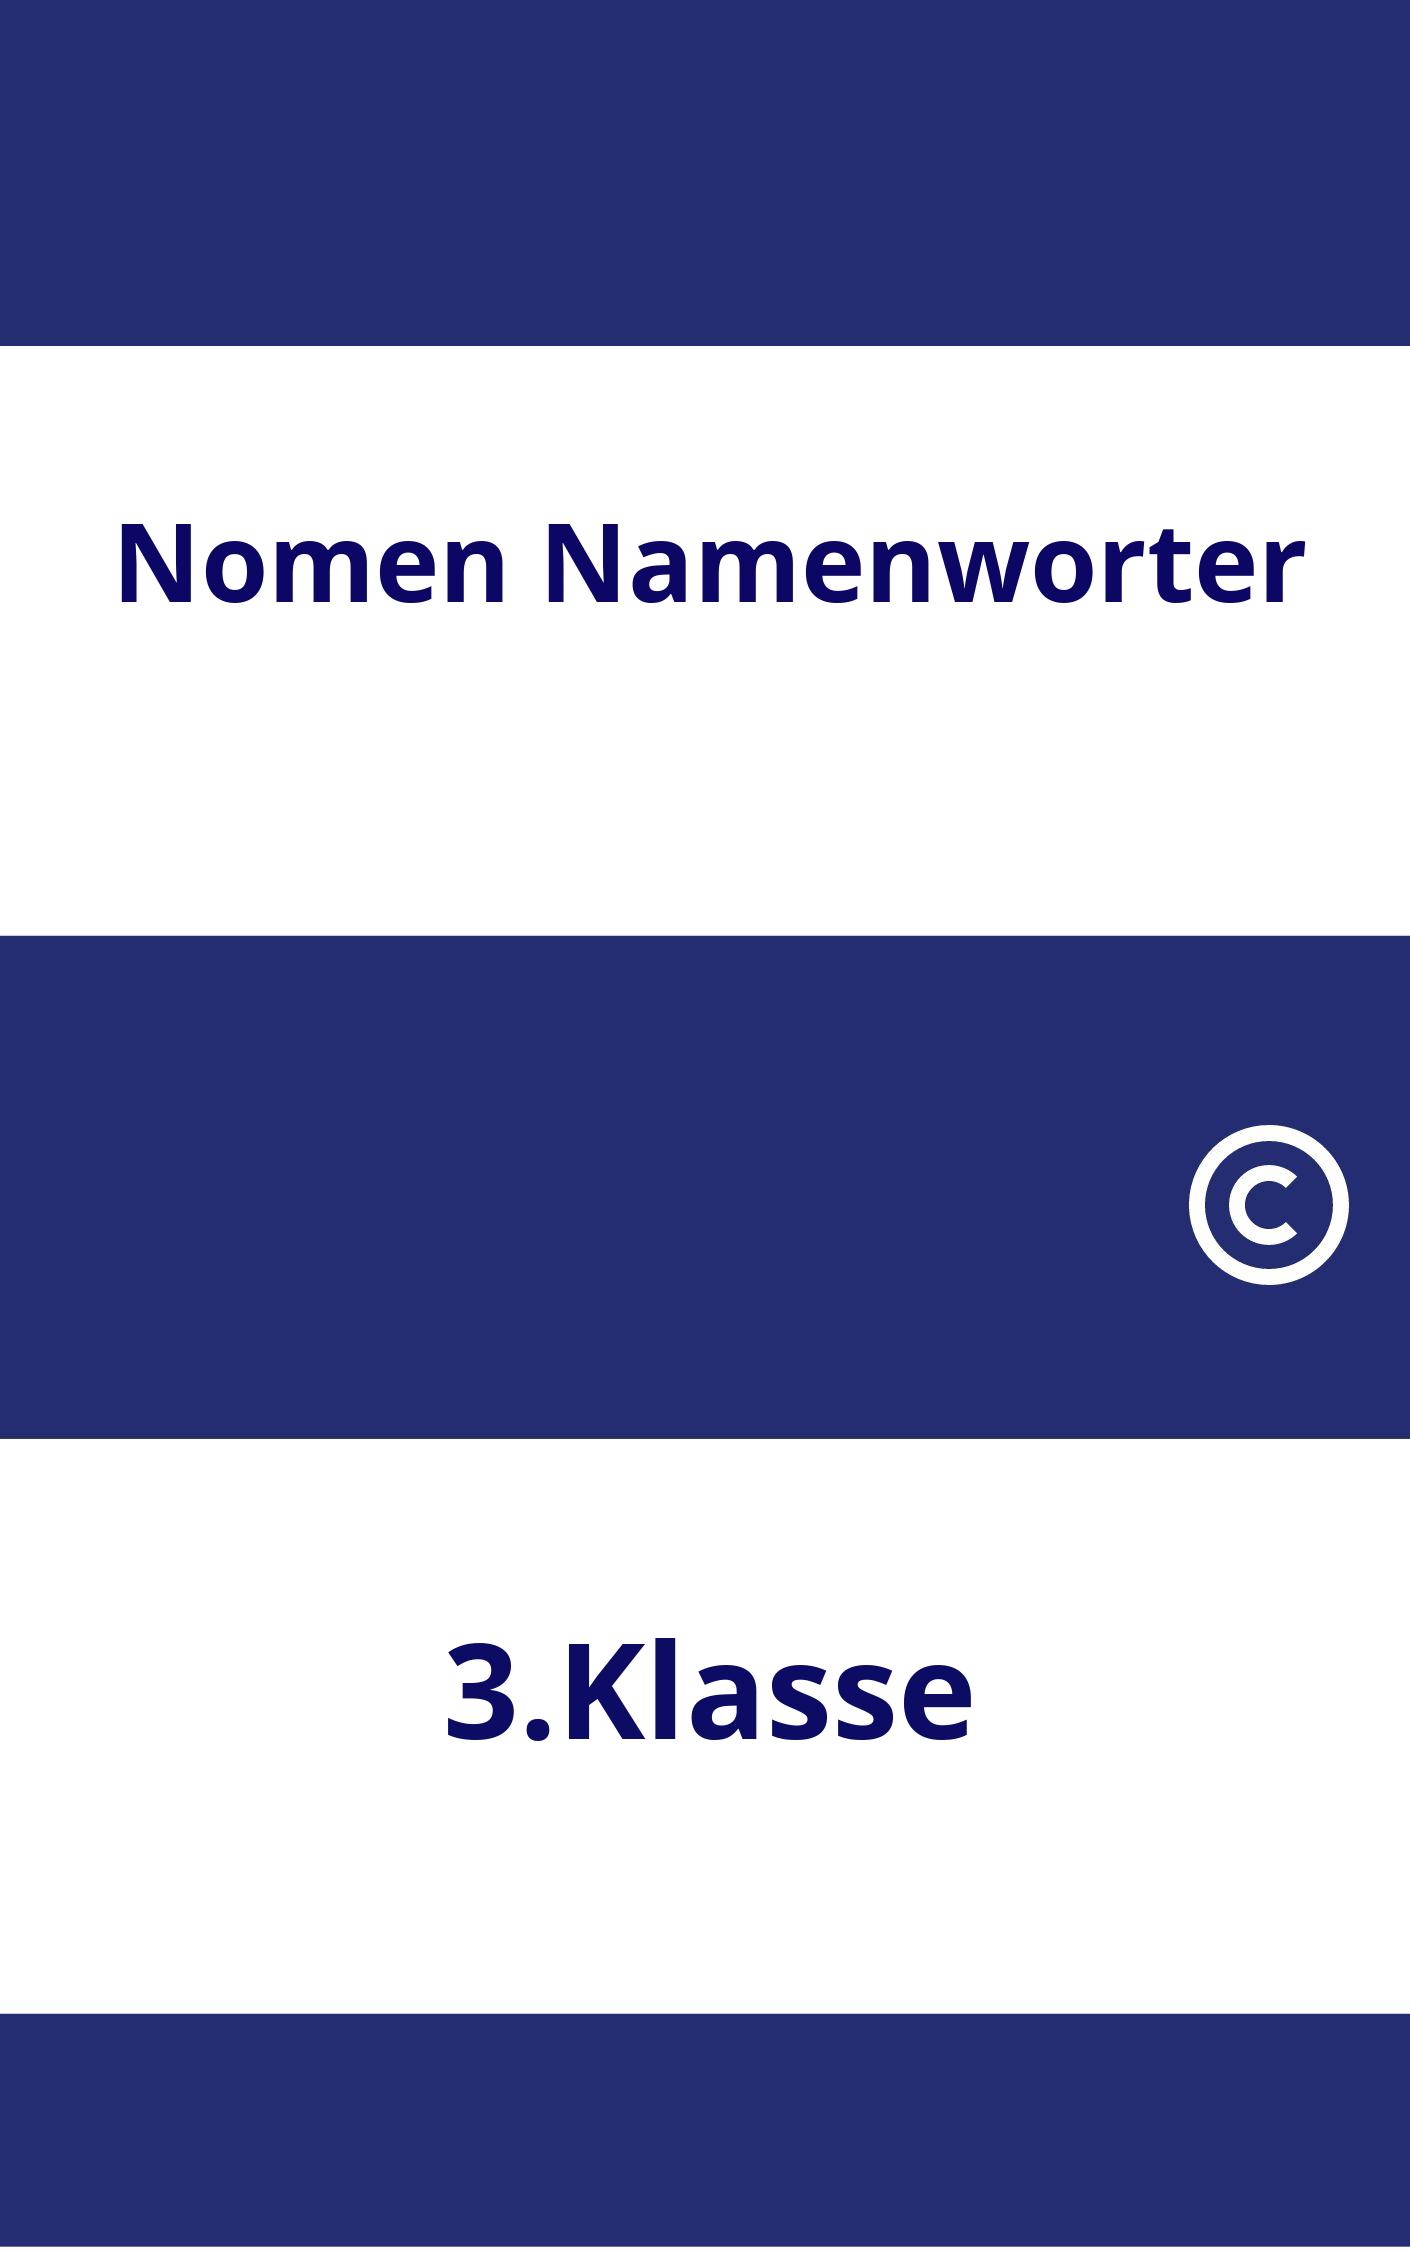 Nomen Namenwörter 3.Klasse Arbeitsblätter PDF